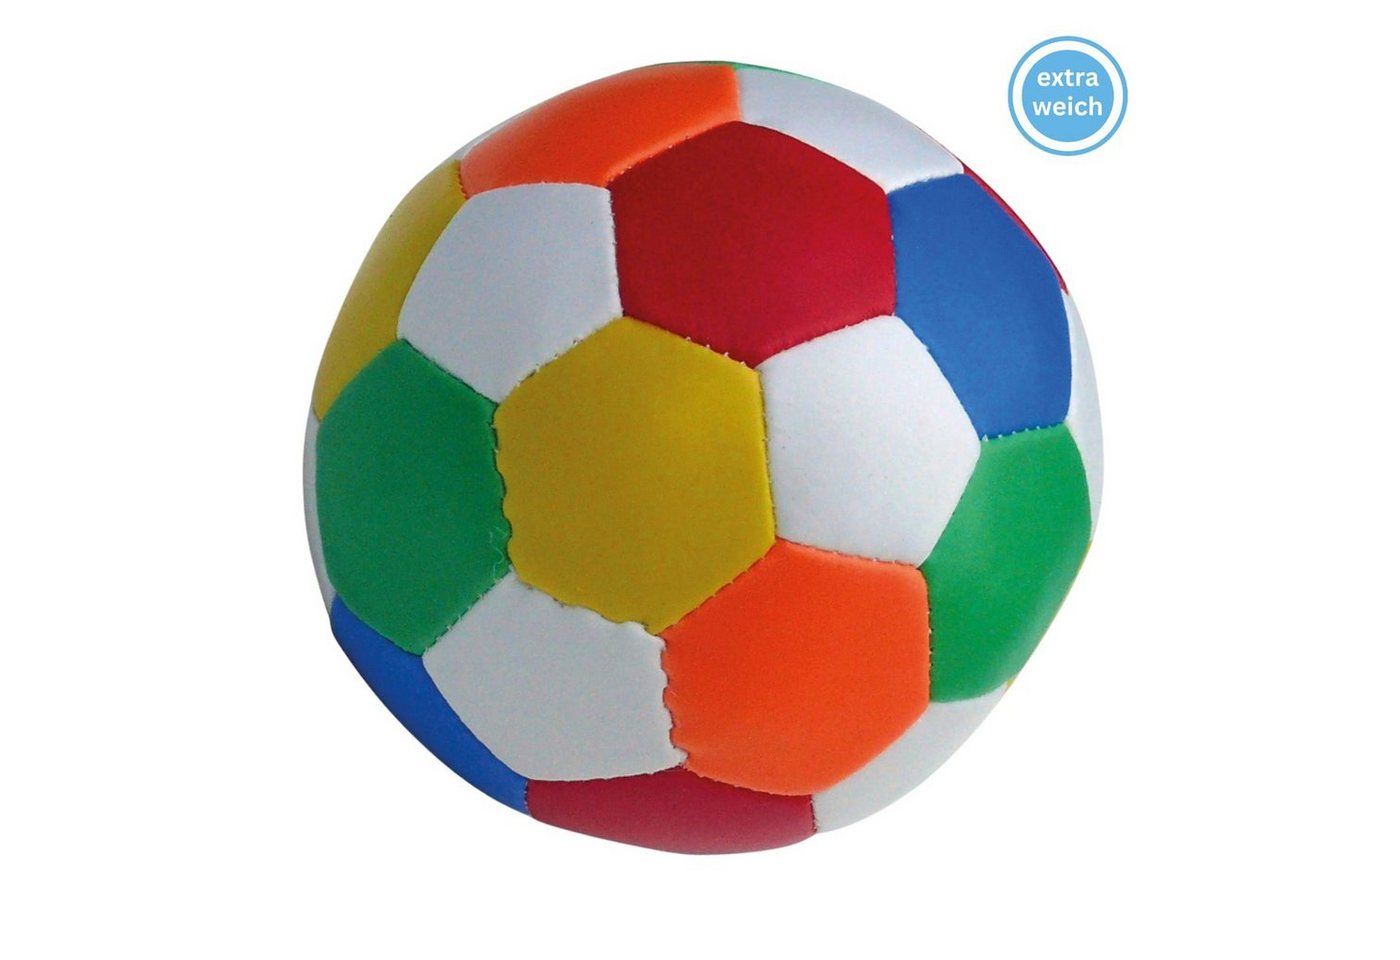 alldoro Softball 60313, Ø 18 cm bunt, extra weicher Spielball für Kinder von alldoro